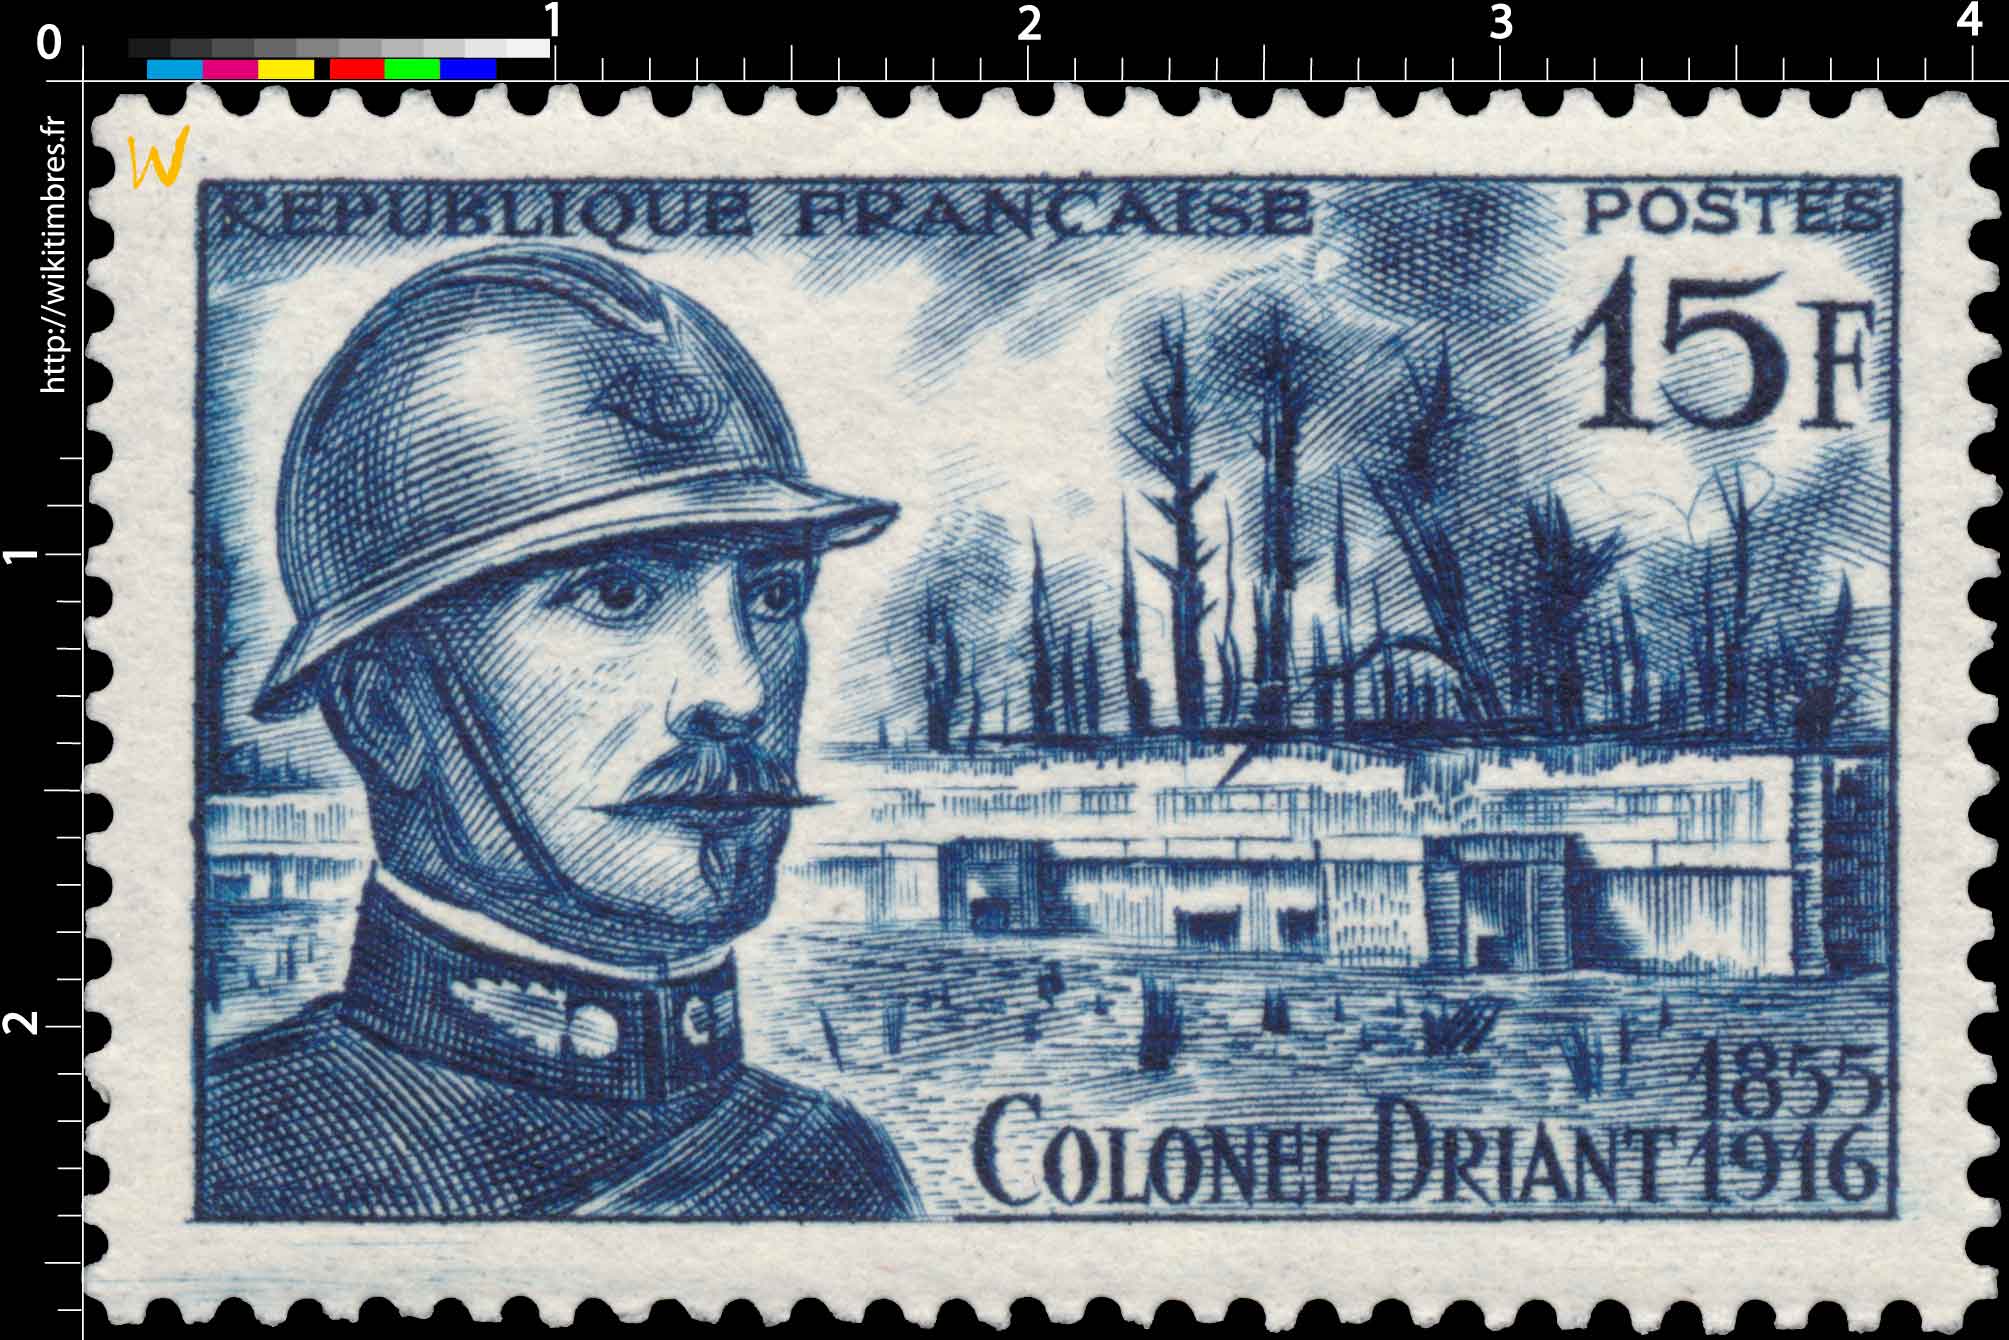 COLONEL DRIANT 1855-1916